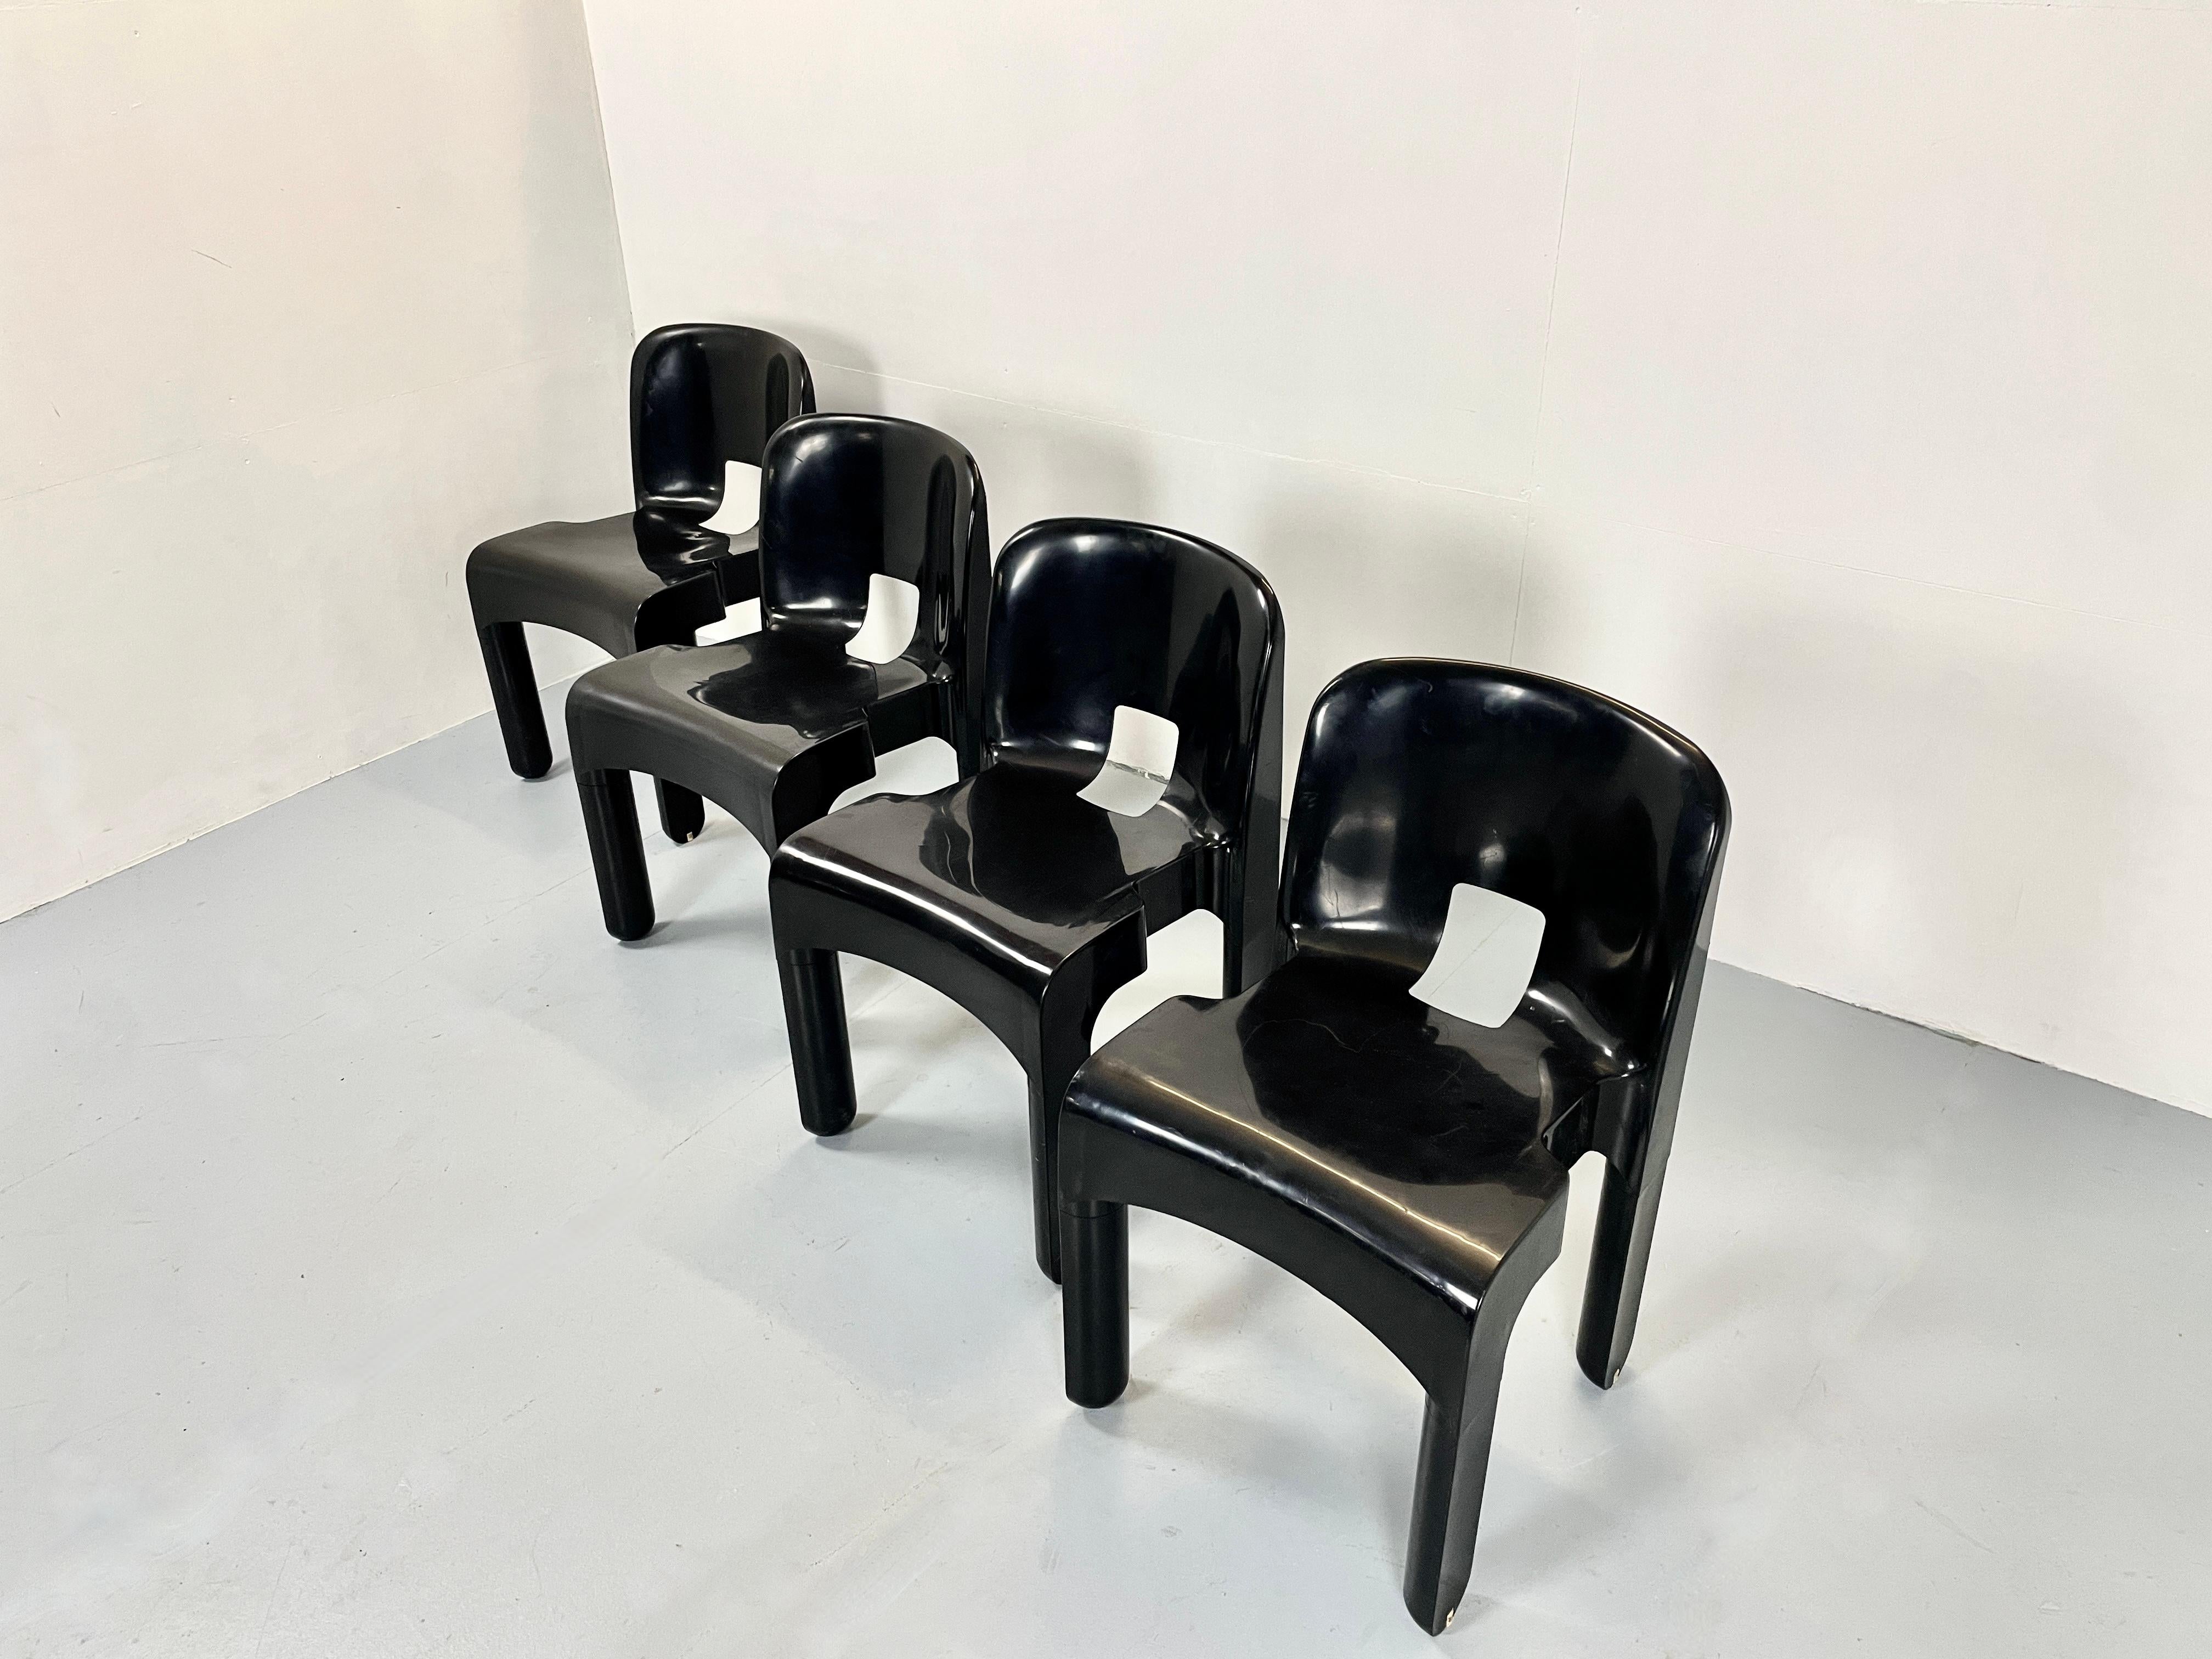 Schöner Satz von acht italienischen Stühlen von Joe Colombo.

Der schwarze Kunststoffstuhl Modell 4867 universale ist eine echte italienische Ikone.
Hergestellt und gestempelt von Kartelle Italien.

Der Universale-Stuhl ist einer der ersten